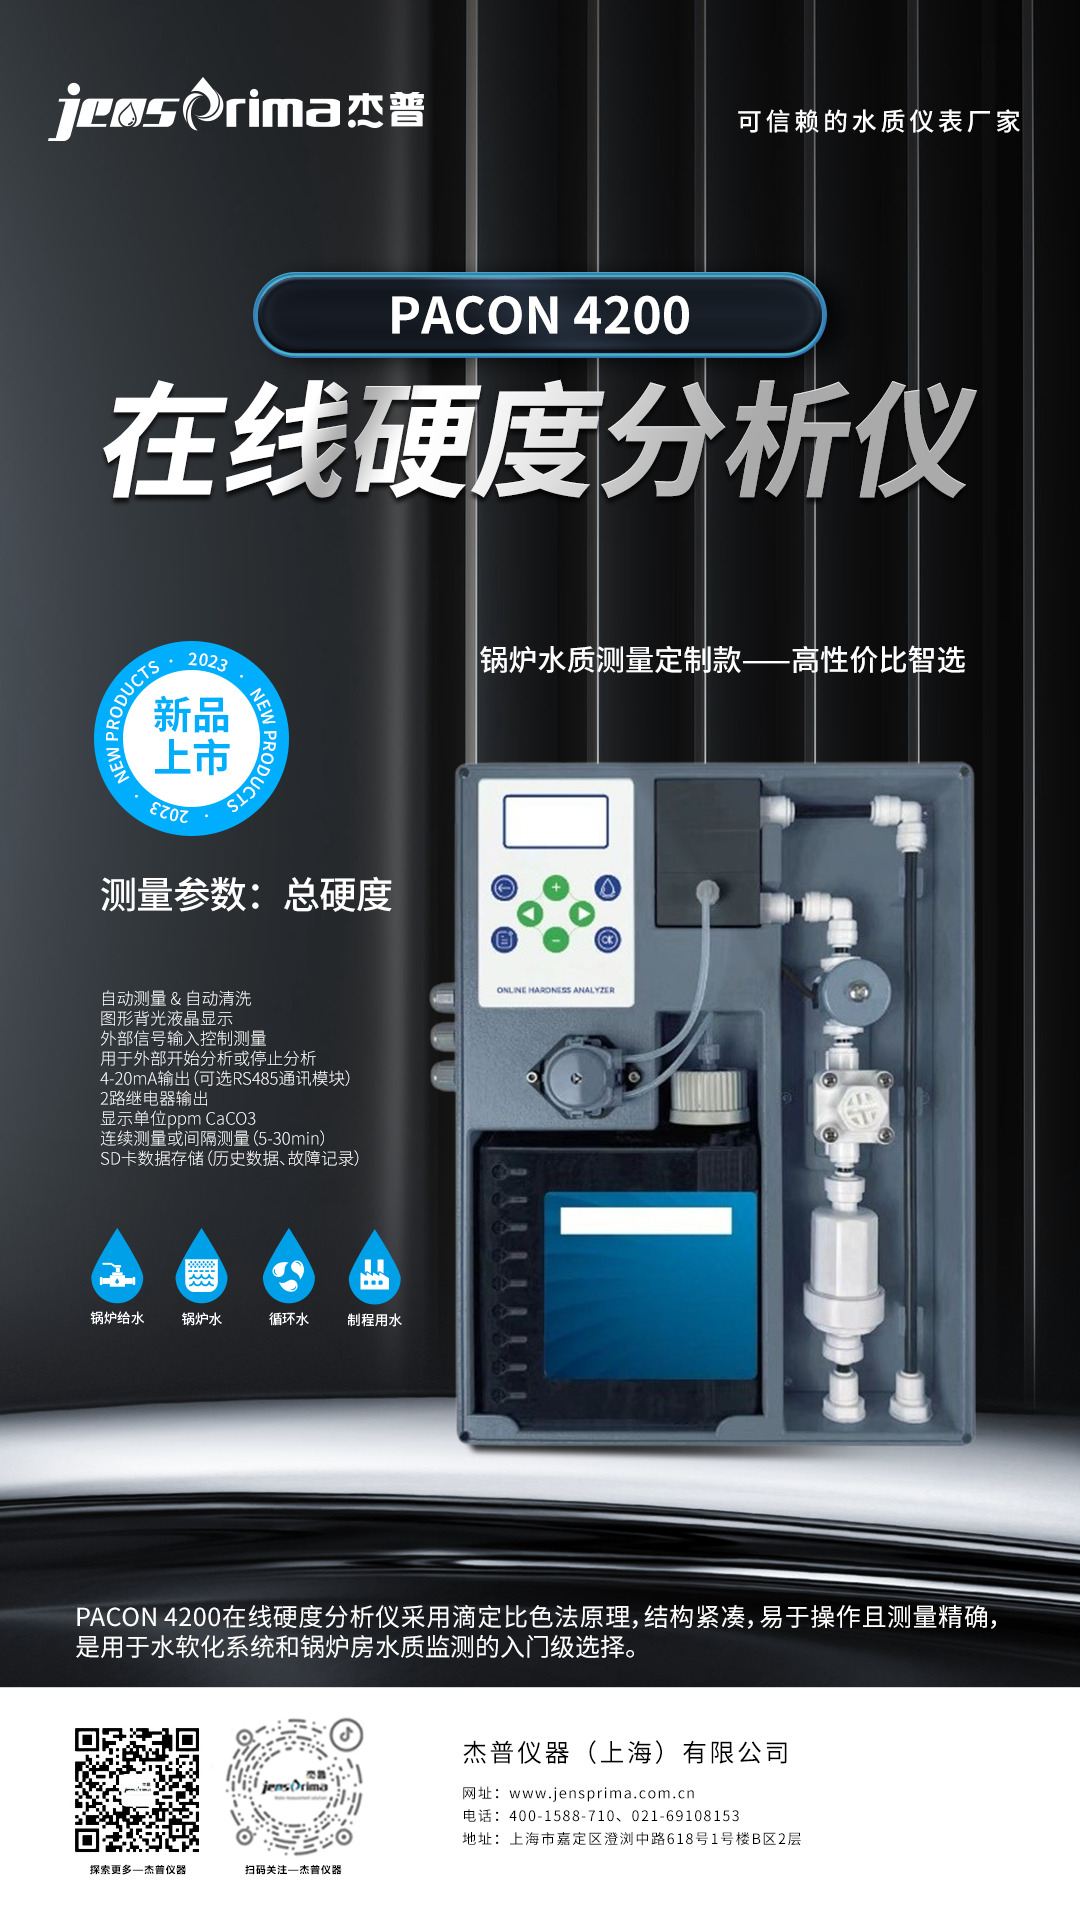 【案例分享】上海某医疗用品有限公司 | PACON 4200在线硬度分析仪